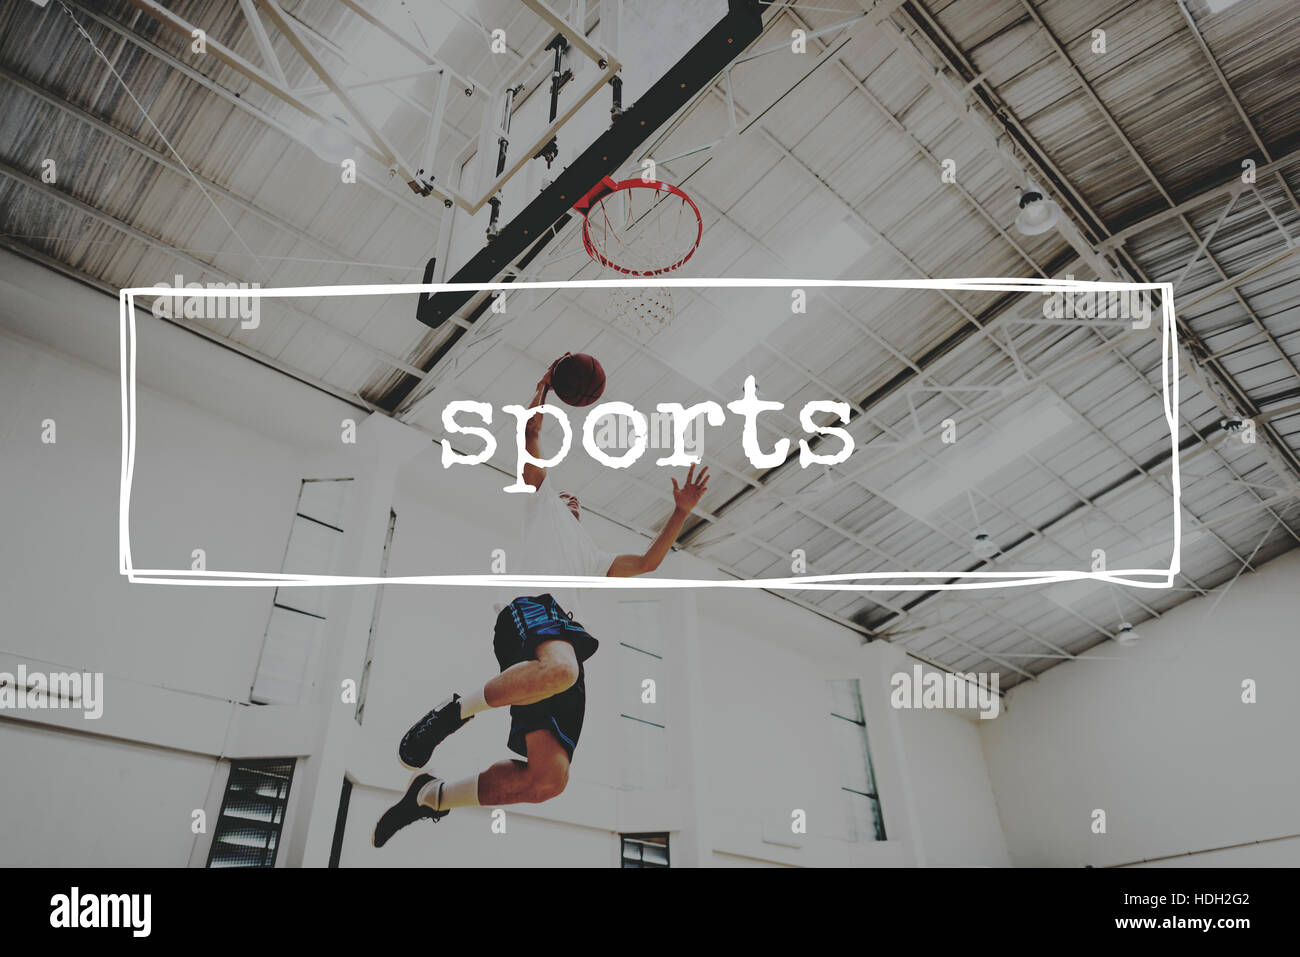 Basketball-Sprungwurf erreichen Hoop Shoot-Sport-Konzept Stockfoto